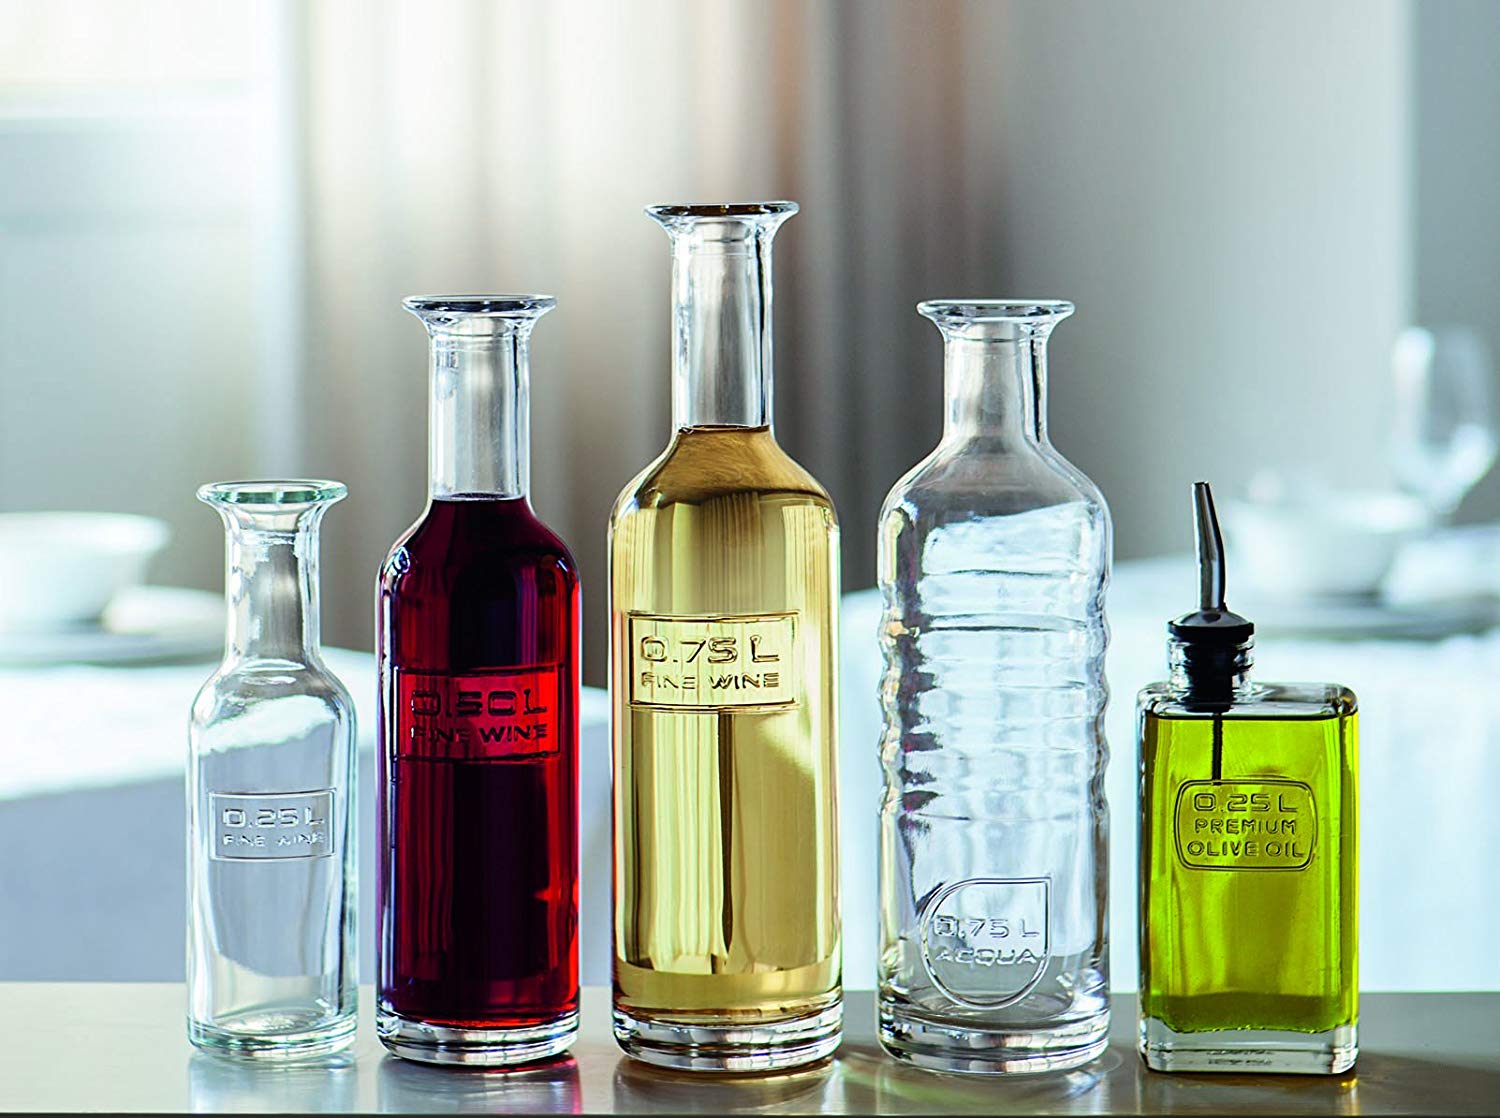 Glasflaschen Serie Optima, unterschiedliche Größen, teils gefüllt mit Rowein, Weißwein, Öl